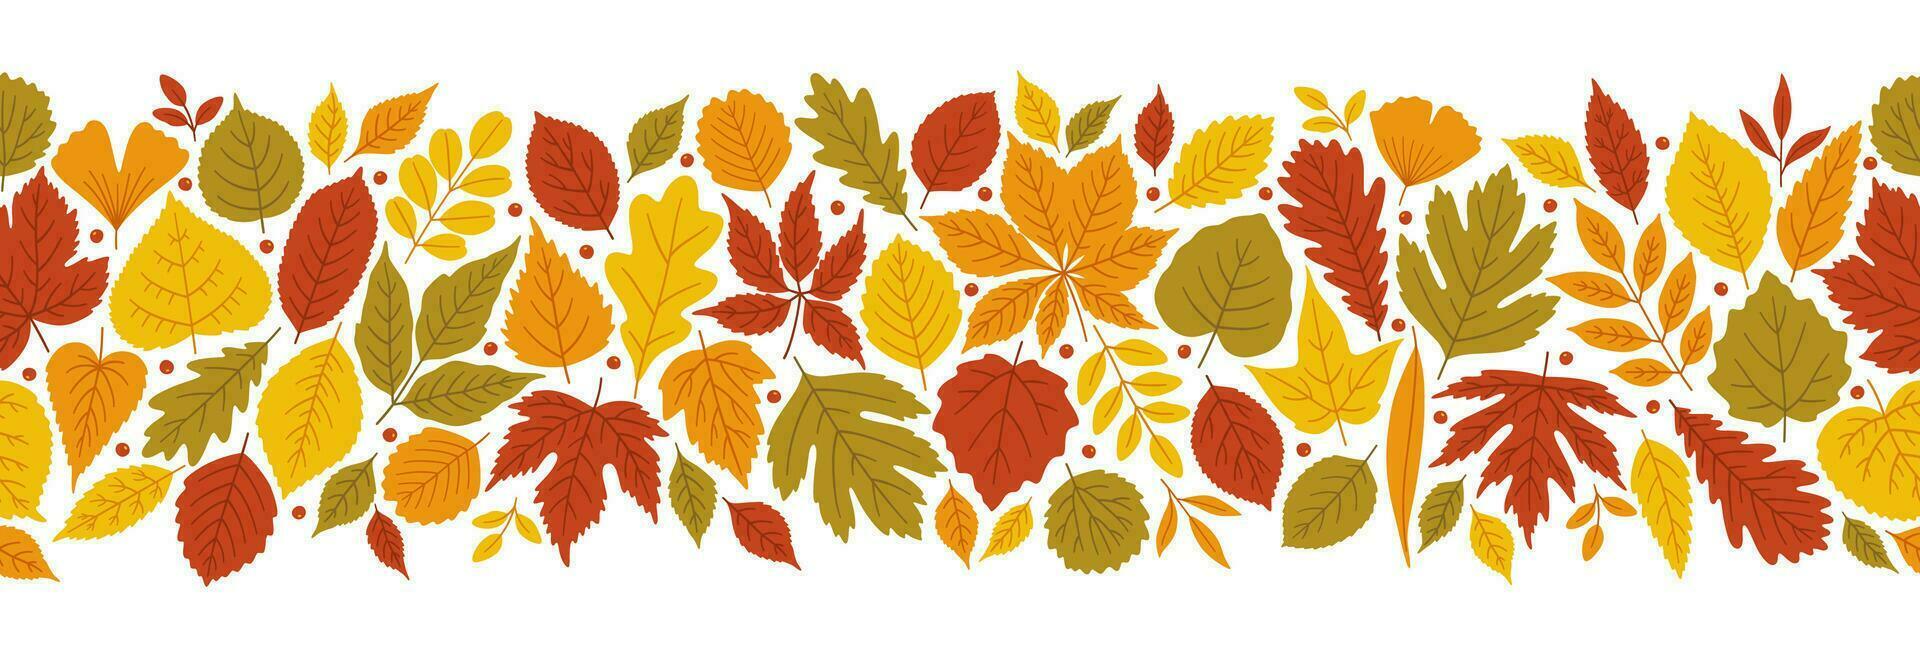 Herbst hell Hintergrund mit abwechslungsreich Blätter, Vektor. vektor